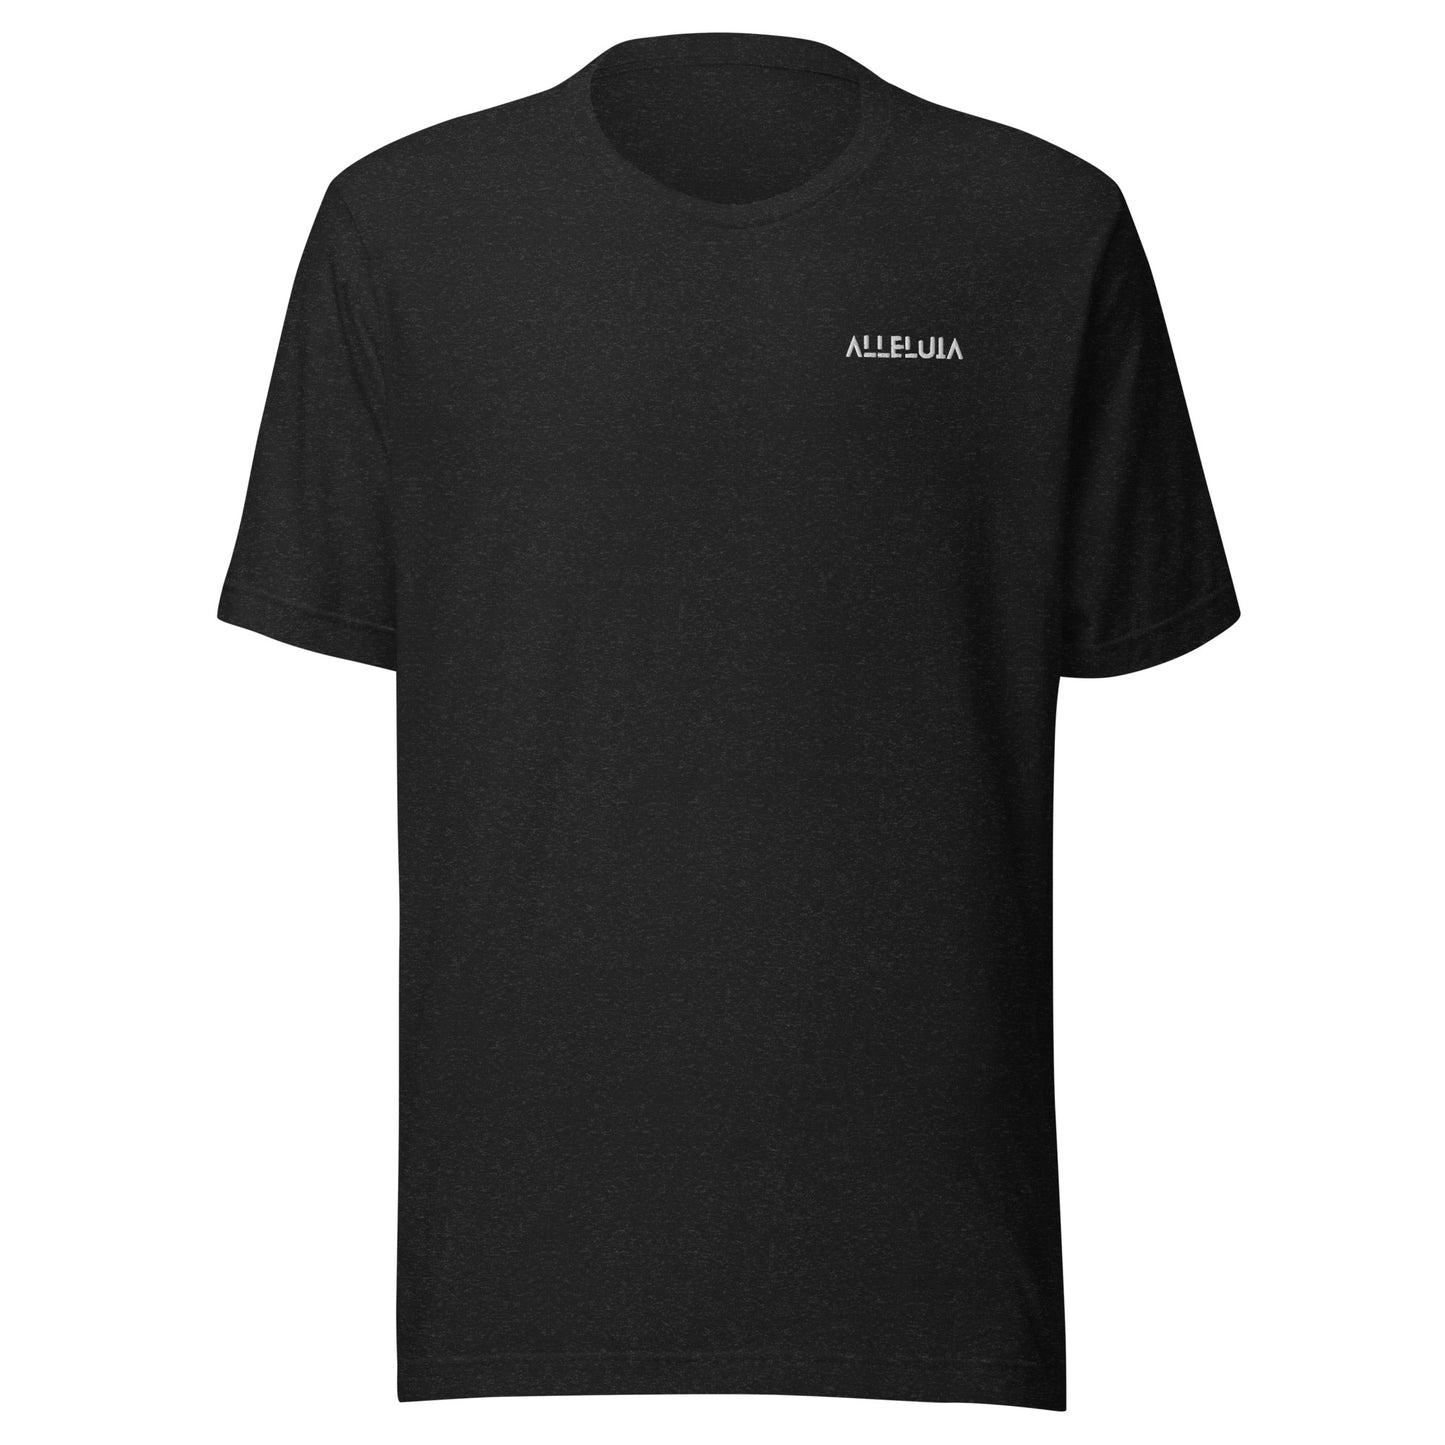 T-shirt 100% coton unisexe brodé ALLELUIA